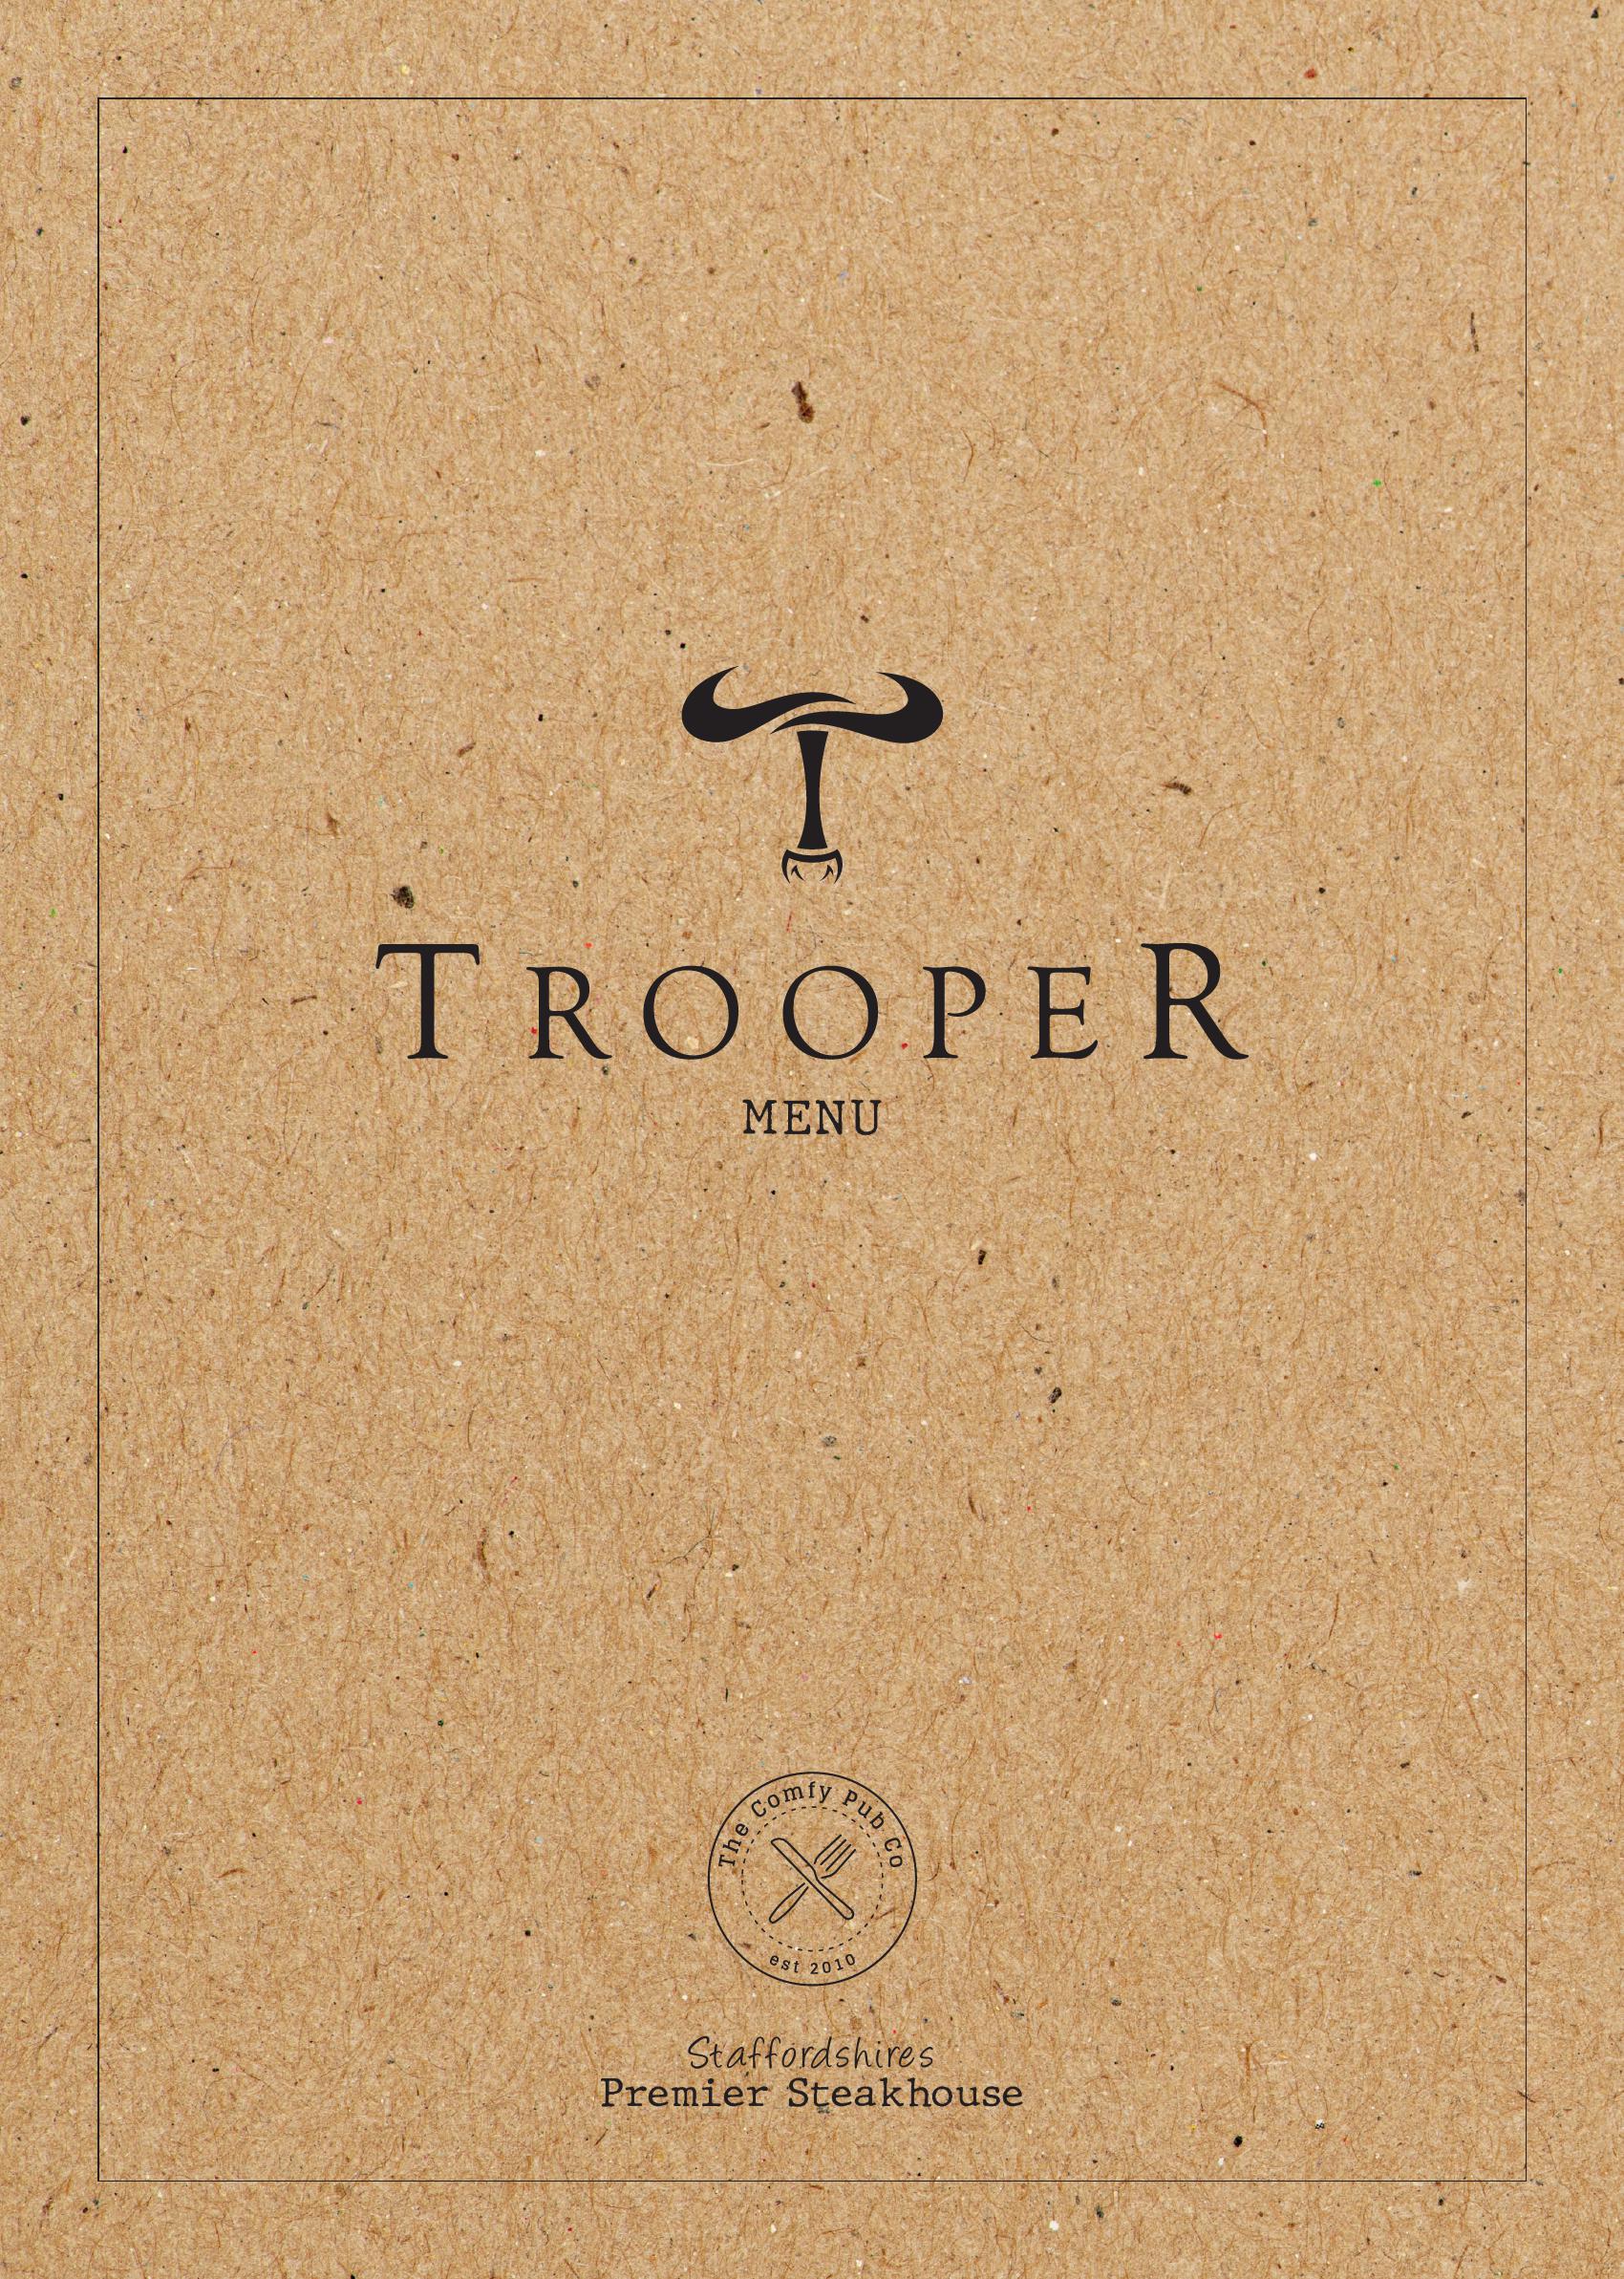 The Trooper - main menu